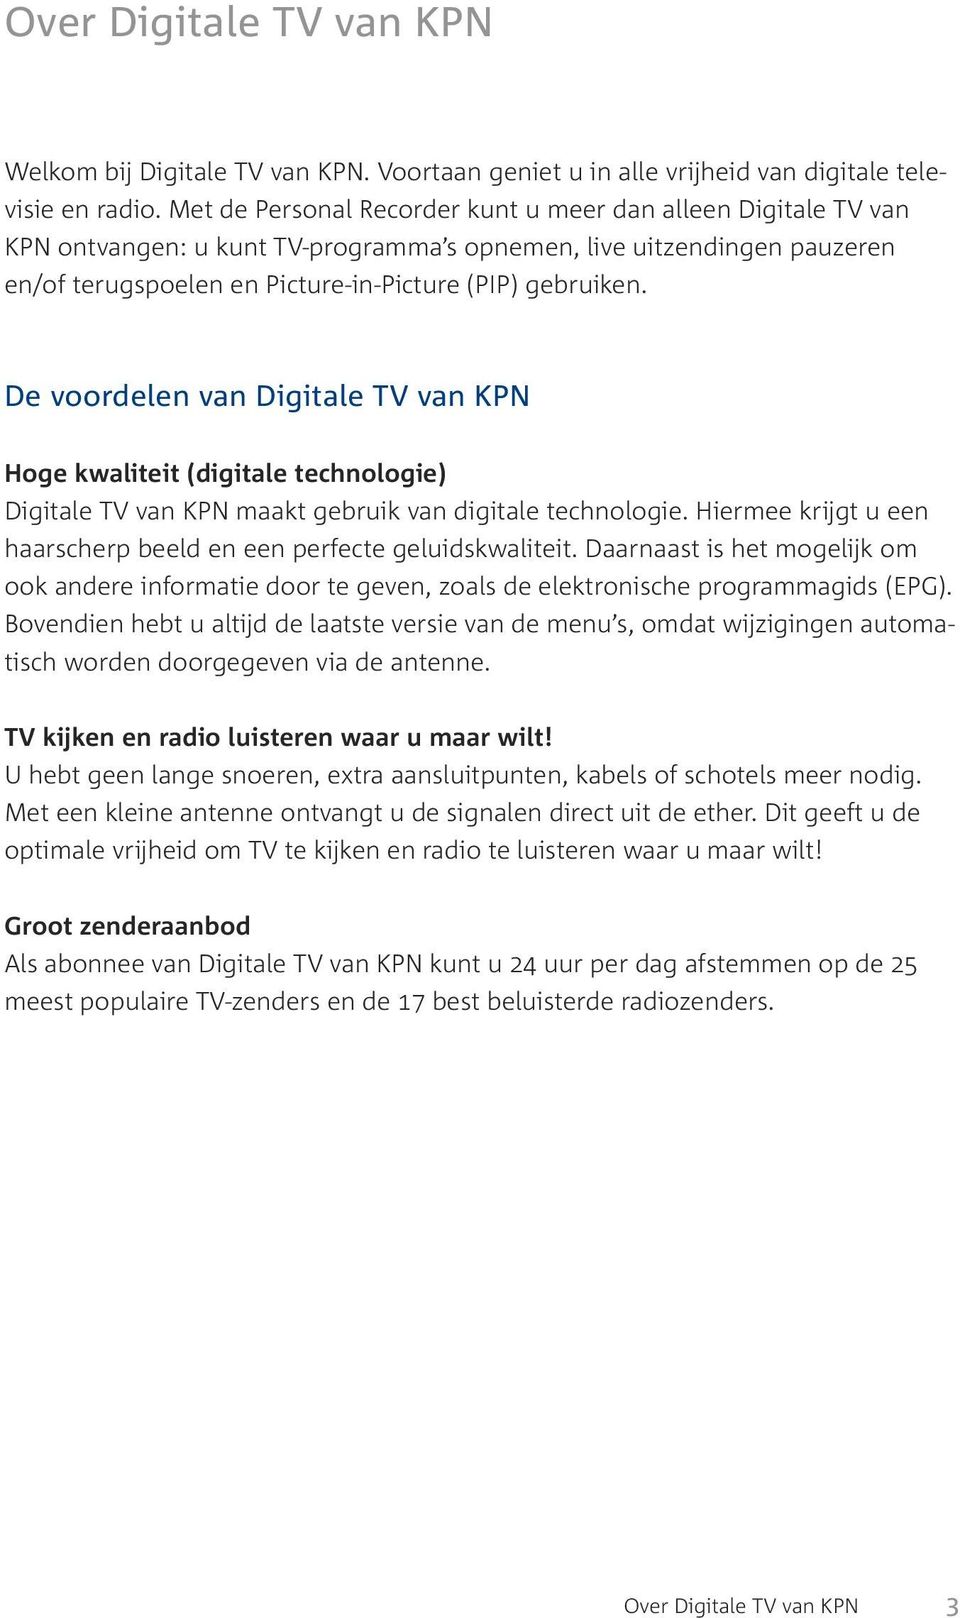 De voordelen van Digitale TV van KPN Hoge kwaliteit (digitale technologie) Digitale TV van KPN maakt gebruik van digitale technologie.